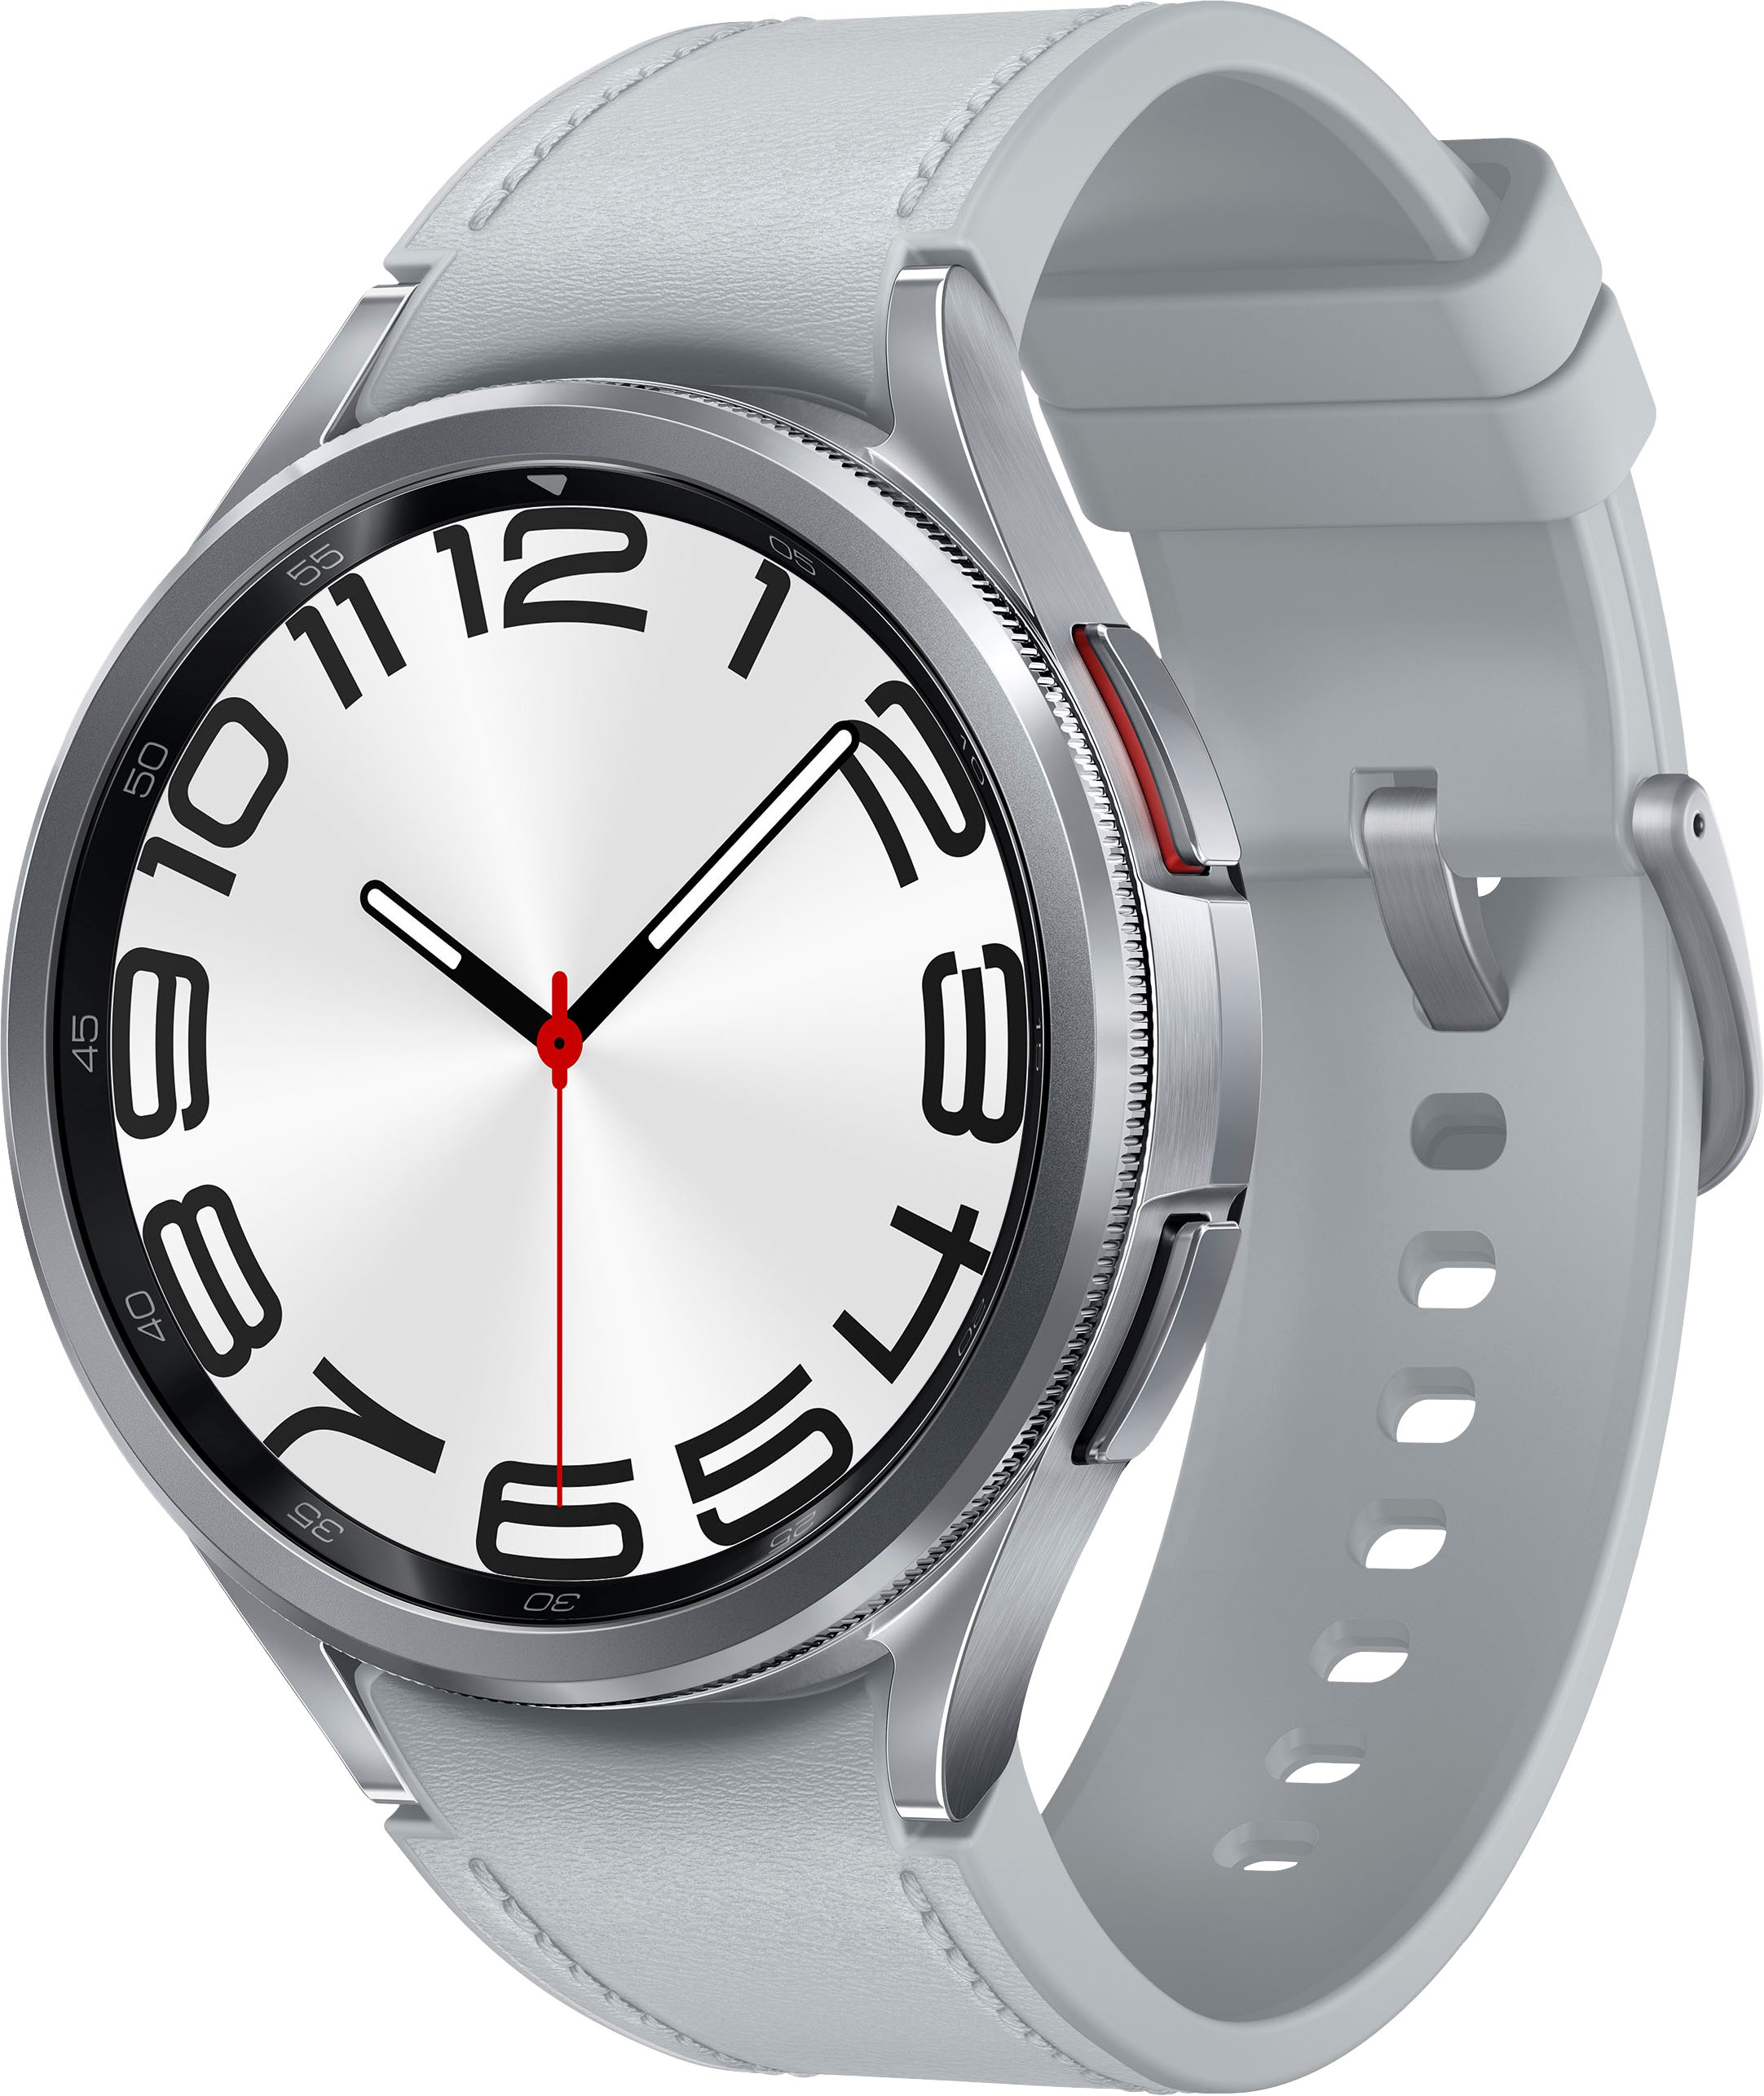 Viedpulkstenis Samsung Galaxy Watch 4 Classic (BT,42mm), Silver  SM-R880NZSAEUD cena